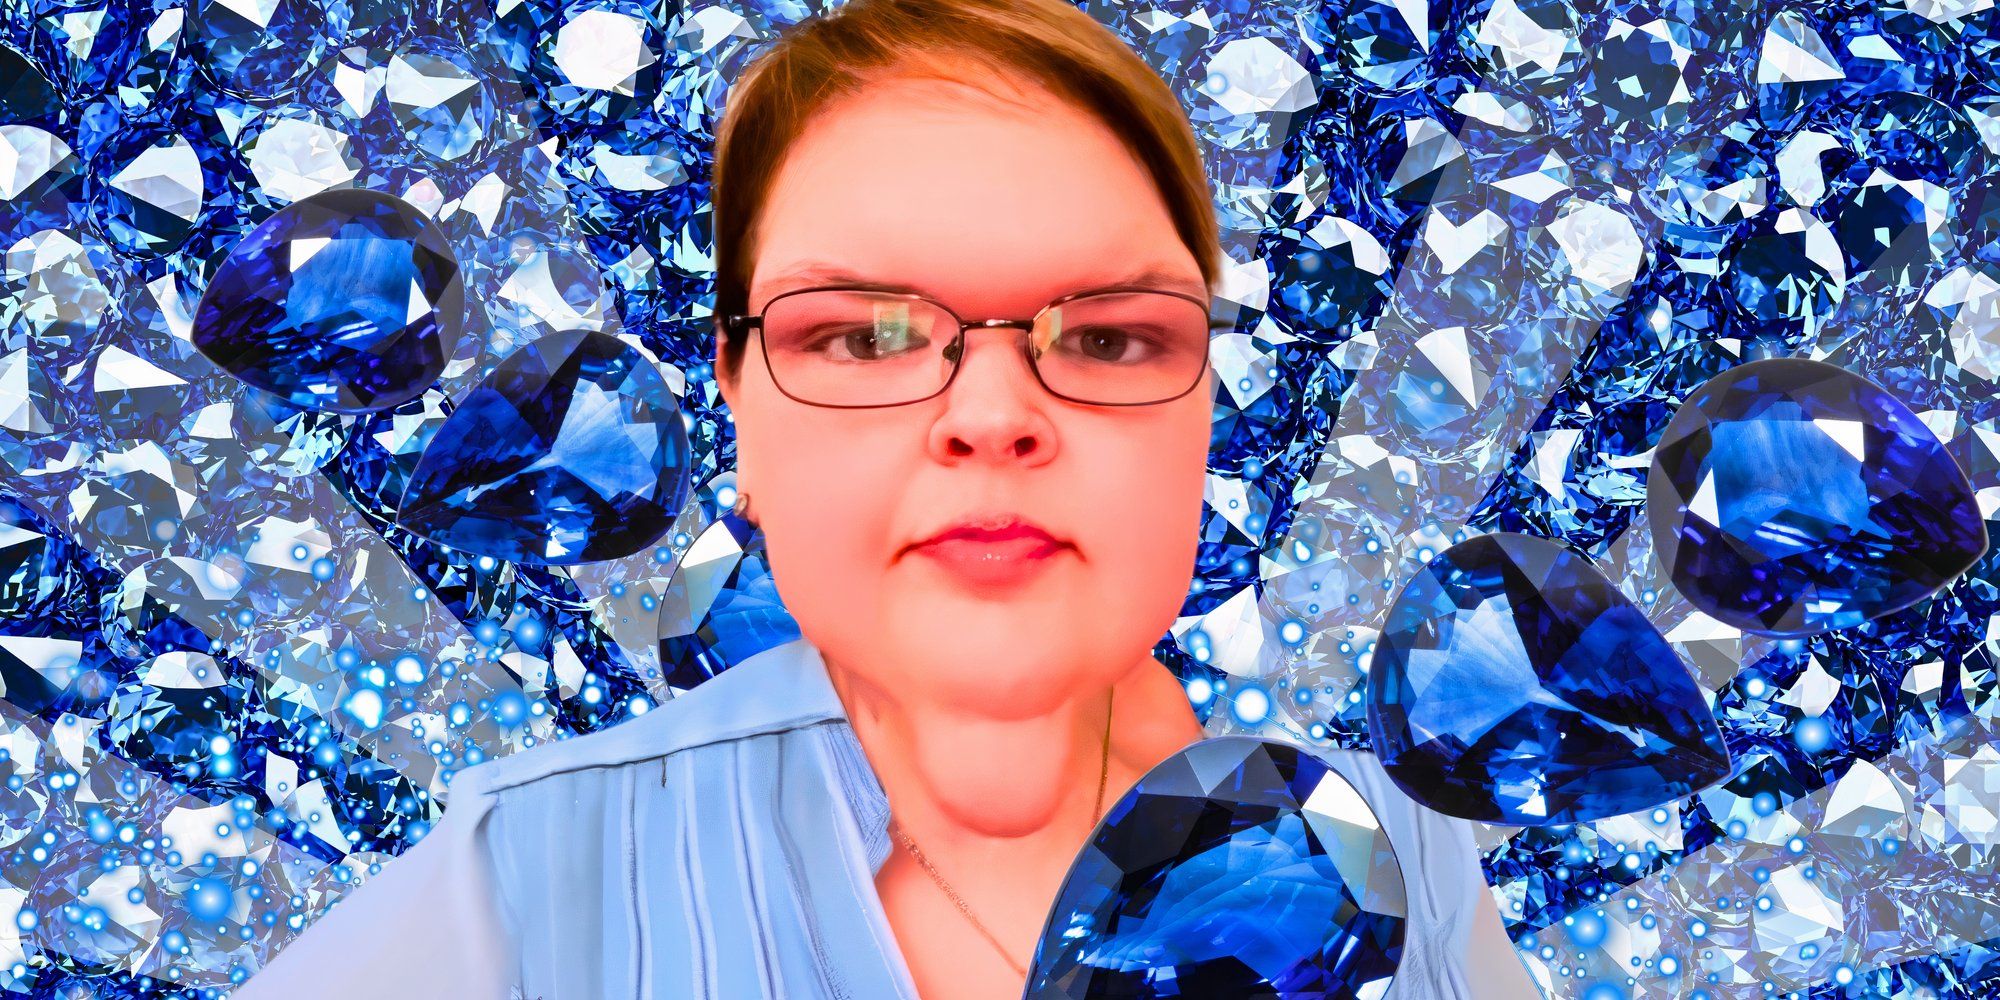 Hermanas de 1000 libras: “¡Zafiro estrella!”: Más atuendos azules de ensueño de Tammy después de un hito extraordinario en su pérdida de peso